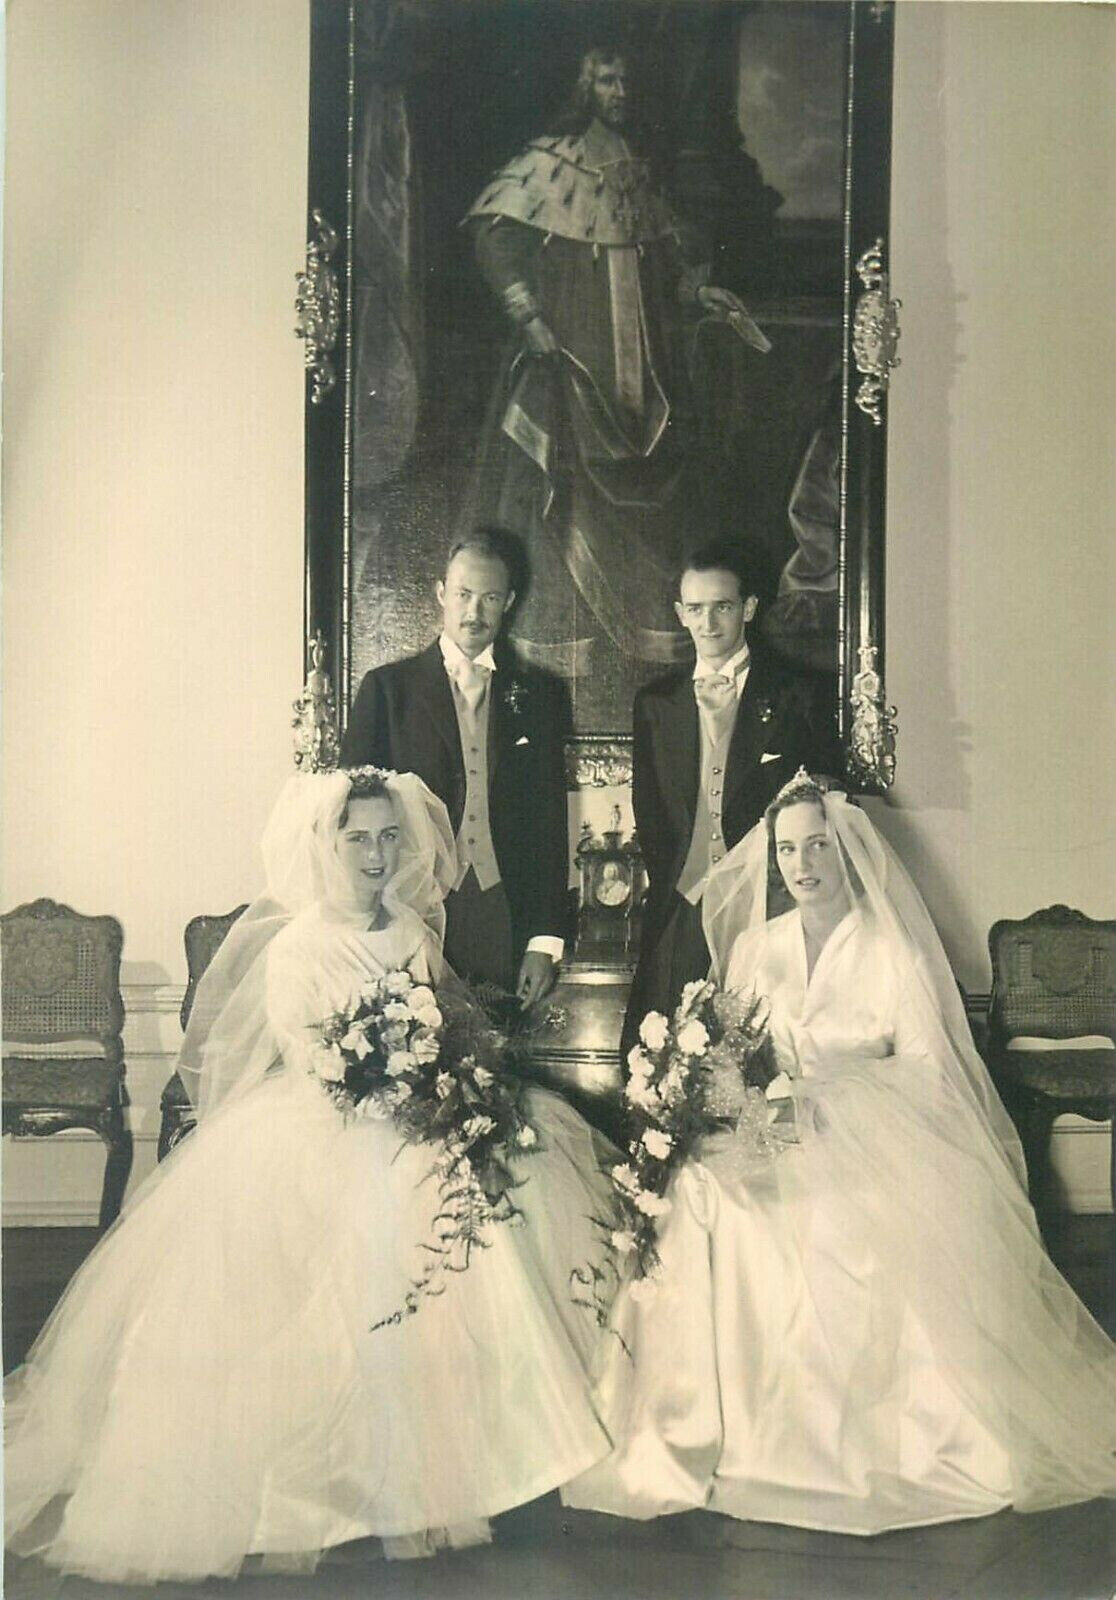 Count Franz Josef & Alois Von Waldburg-Zeil countesses Priscilla & Clarissa 1957